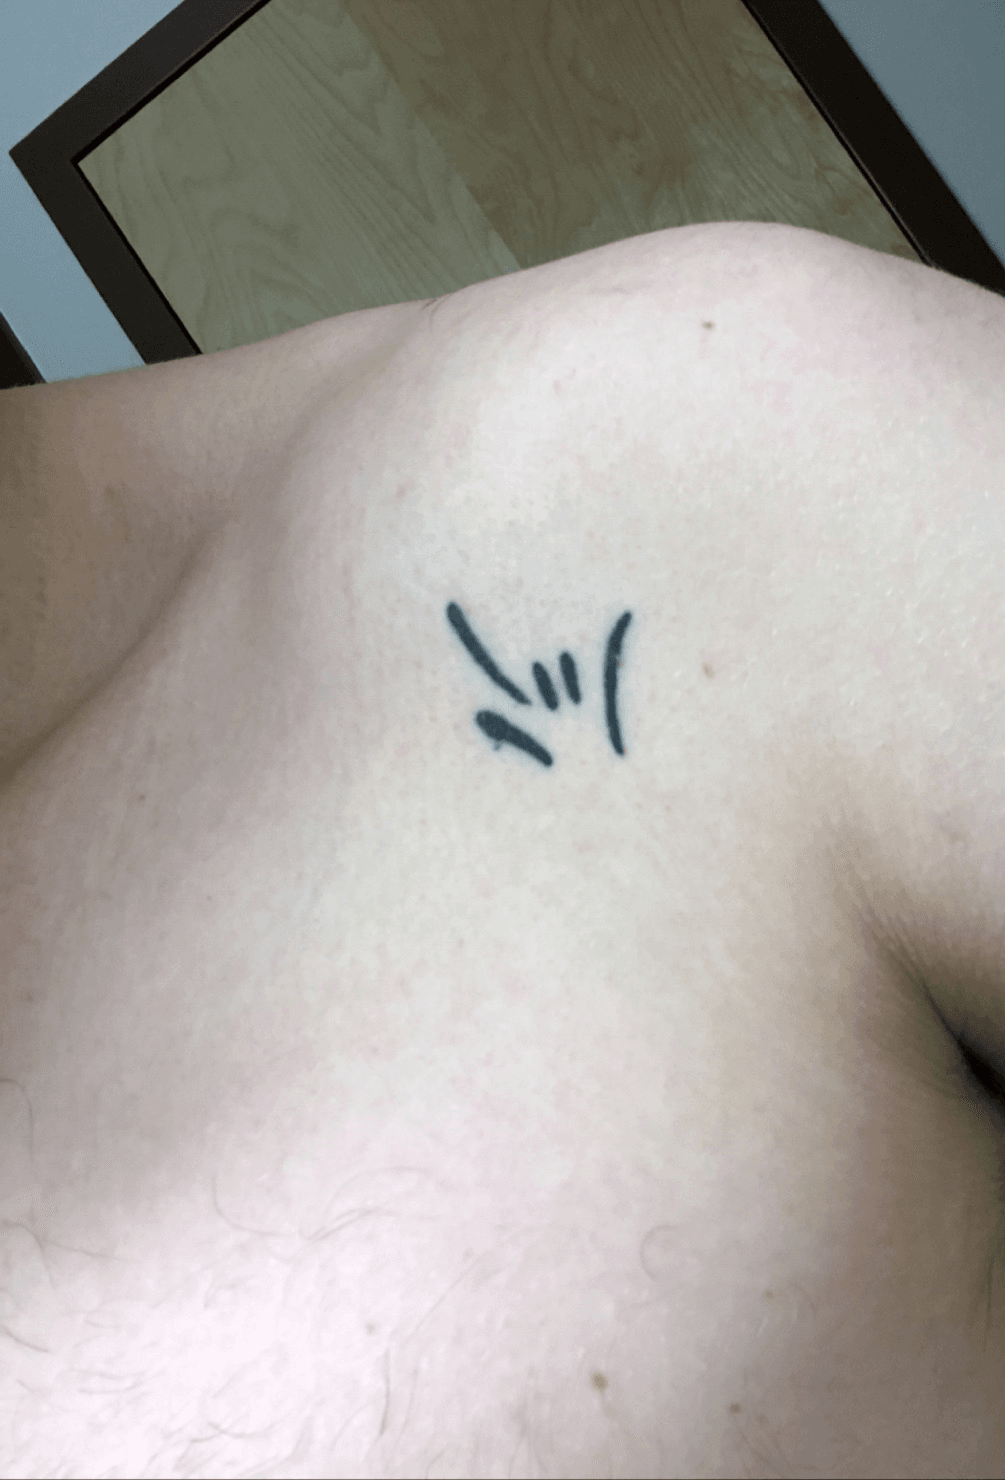 sign language tattoos